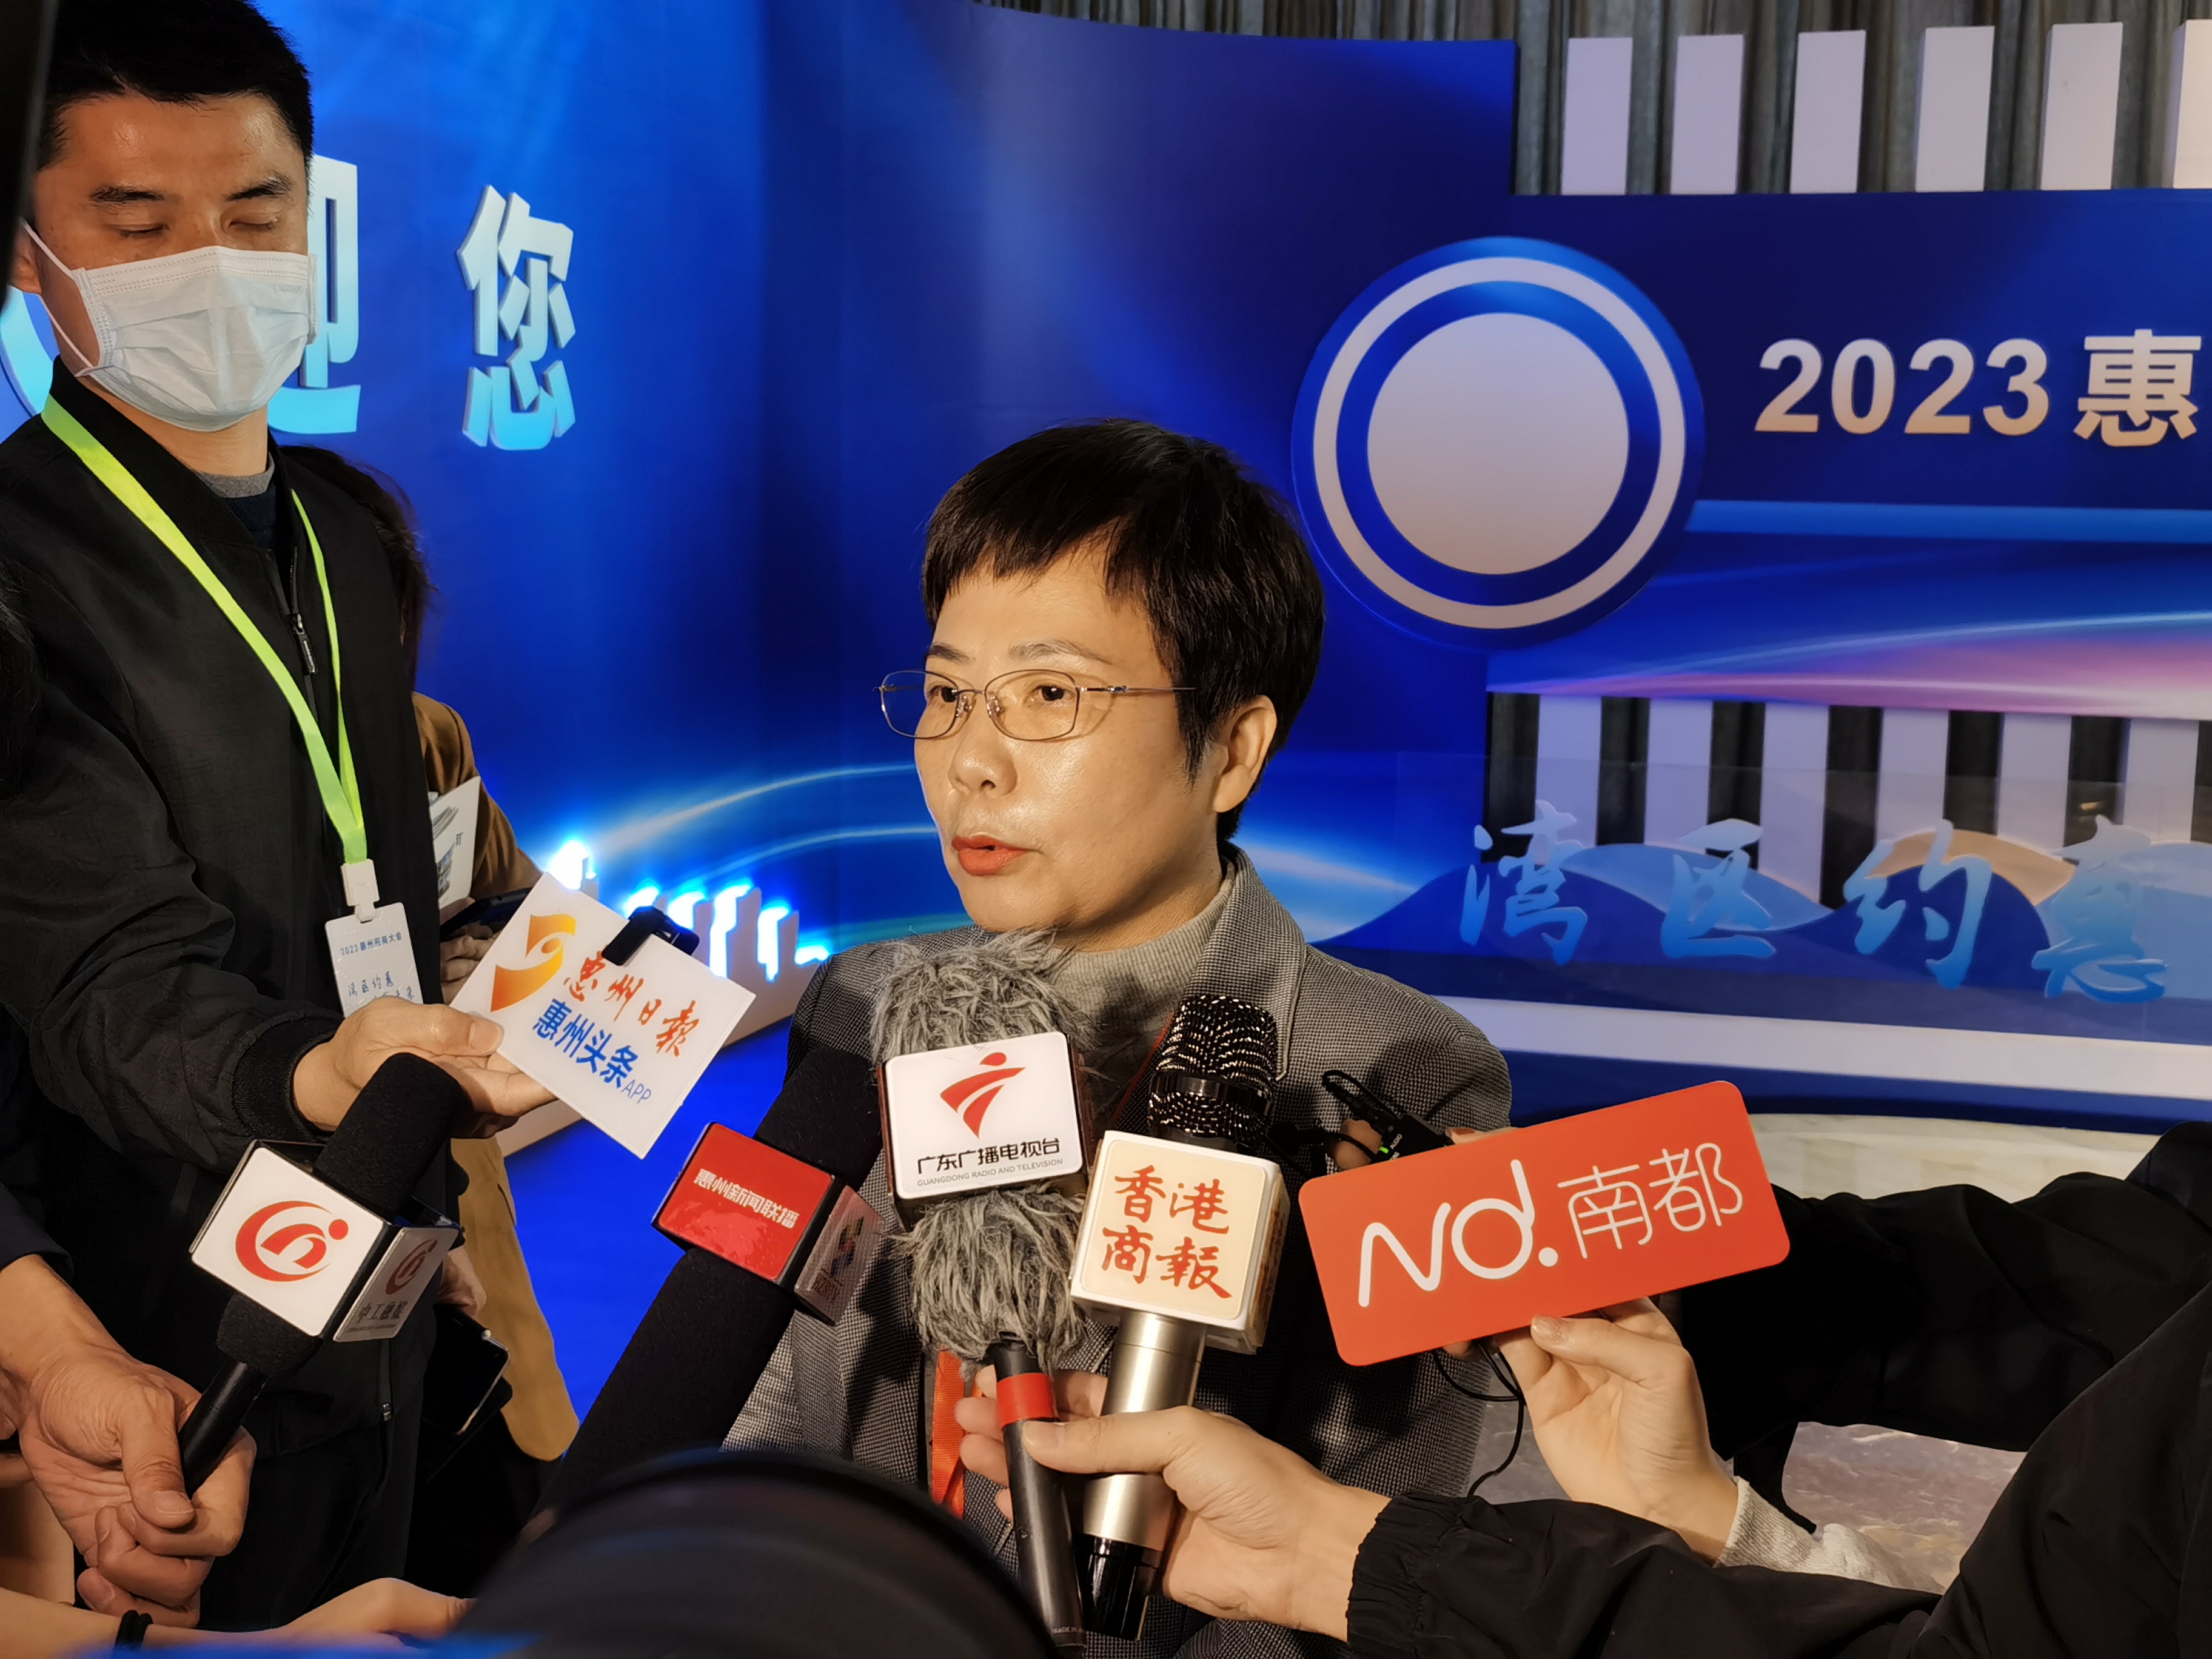 5、惠州市政協副主席、市發改局局長吳欣在接受媒體採訪.jpg